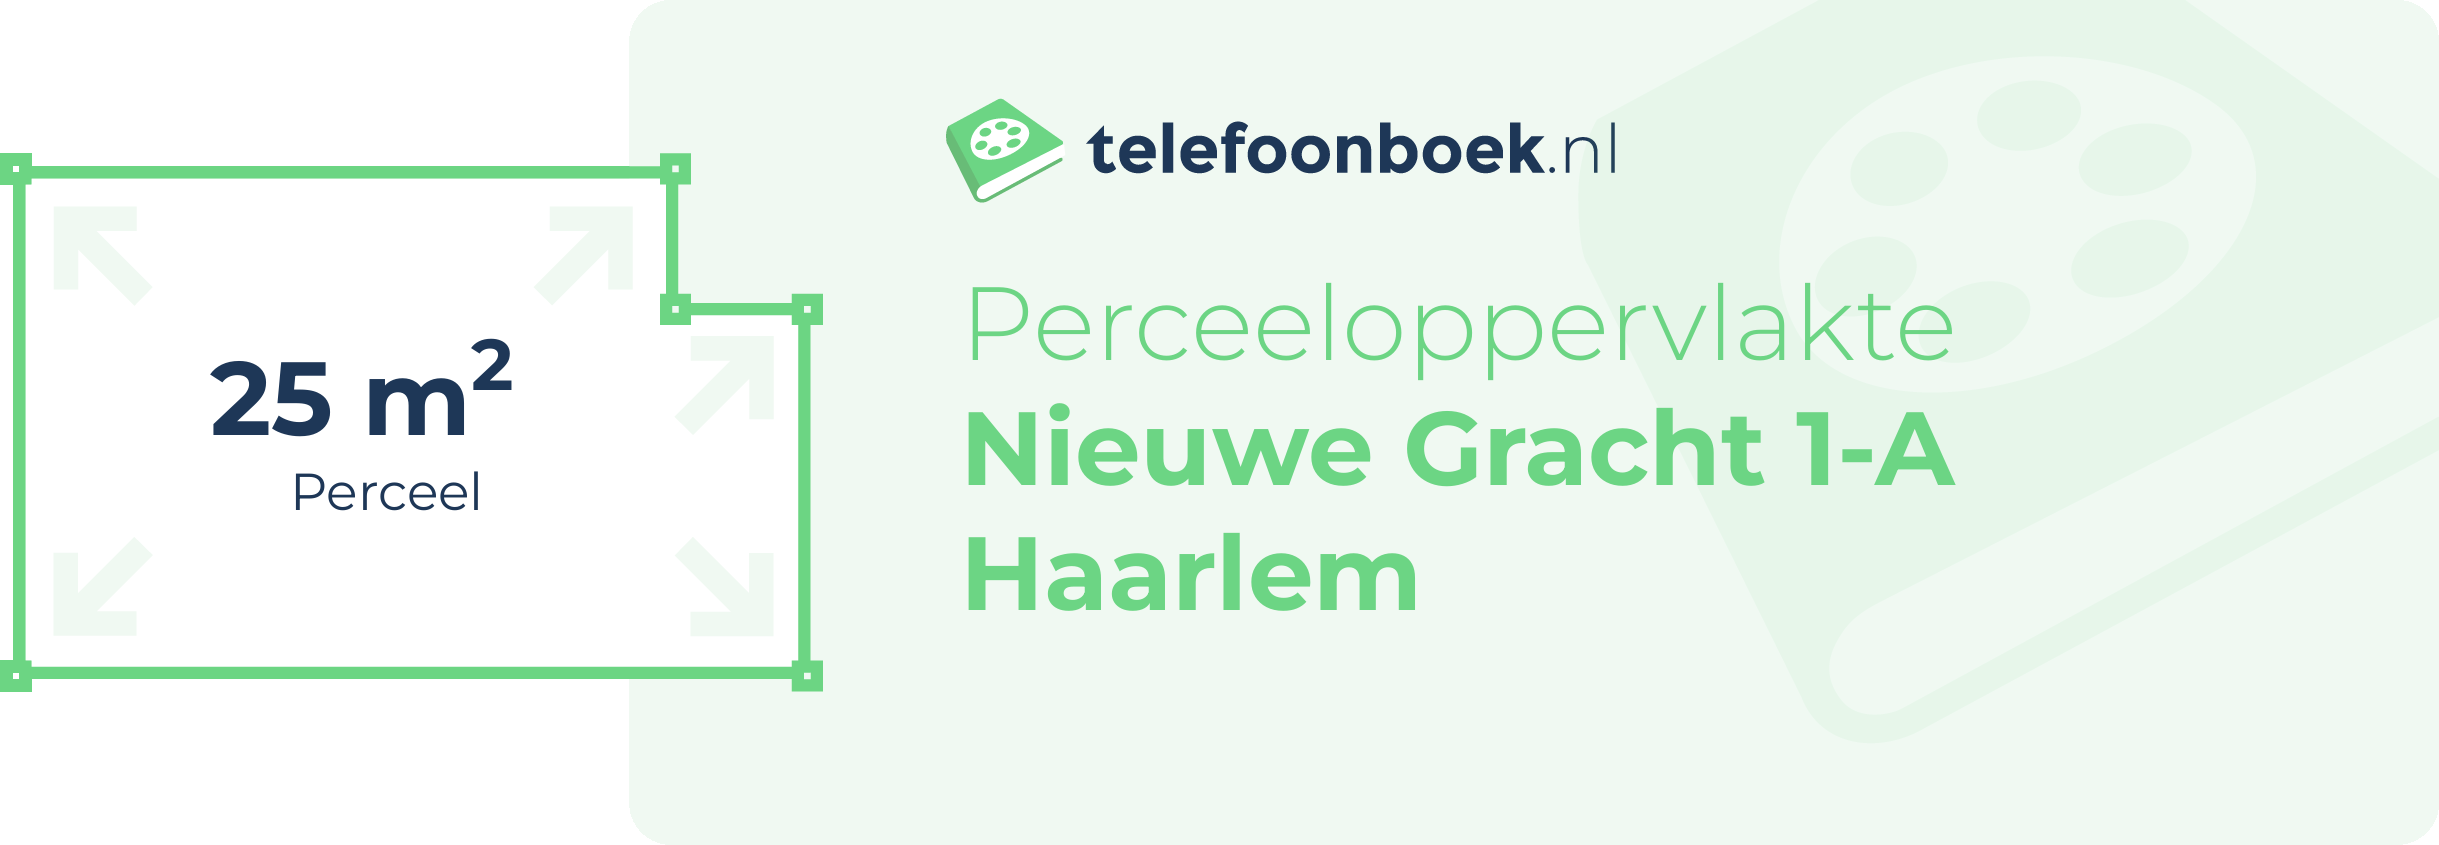 Perceeloppervlakte Nieuwe Gracht 1-A Haarlem